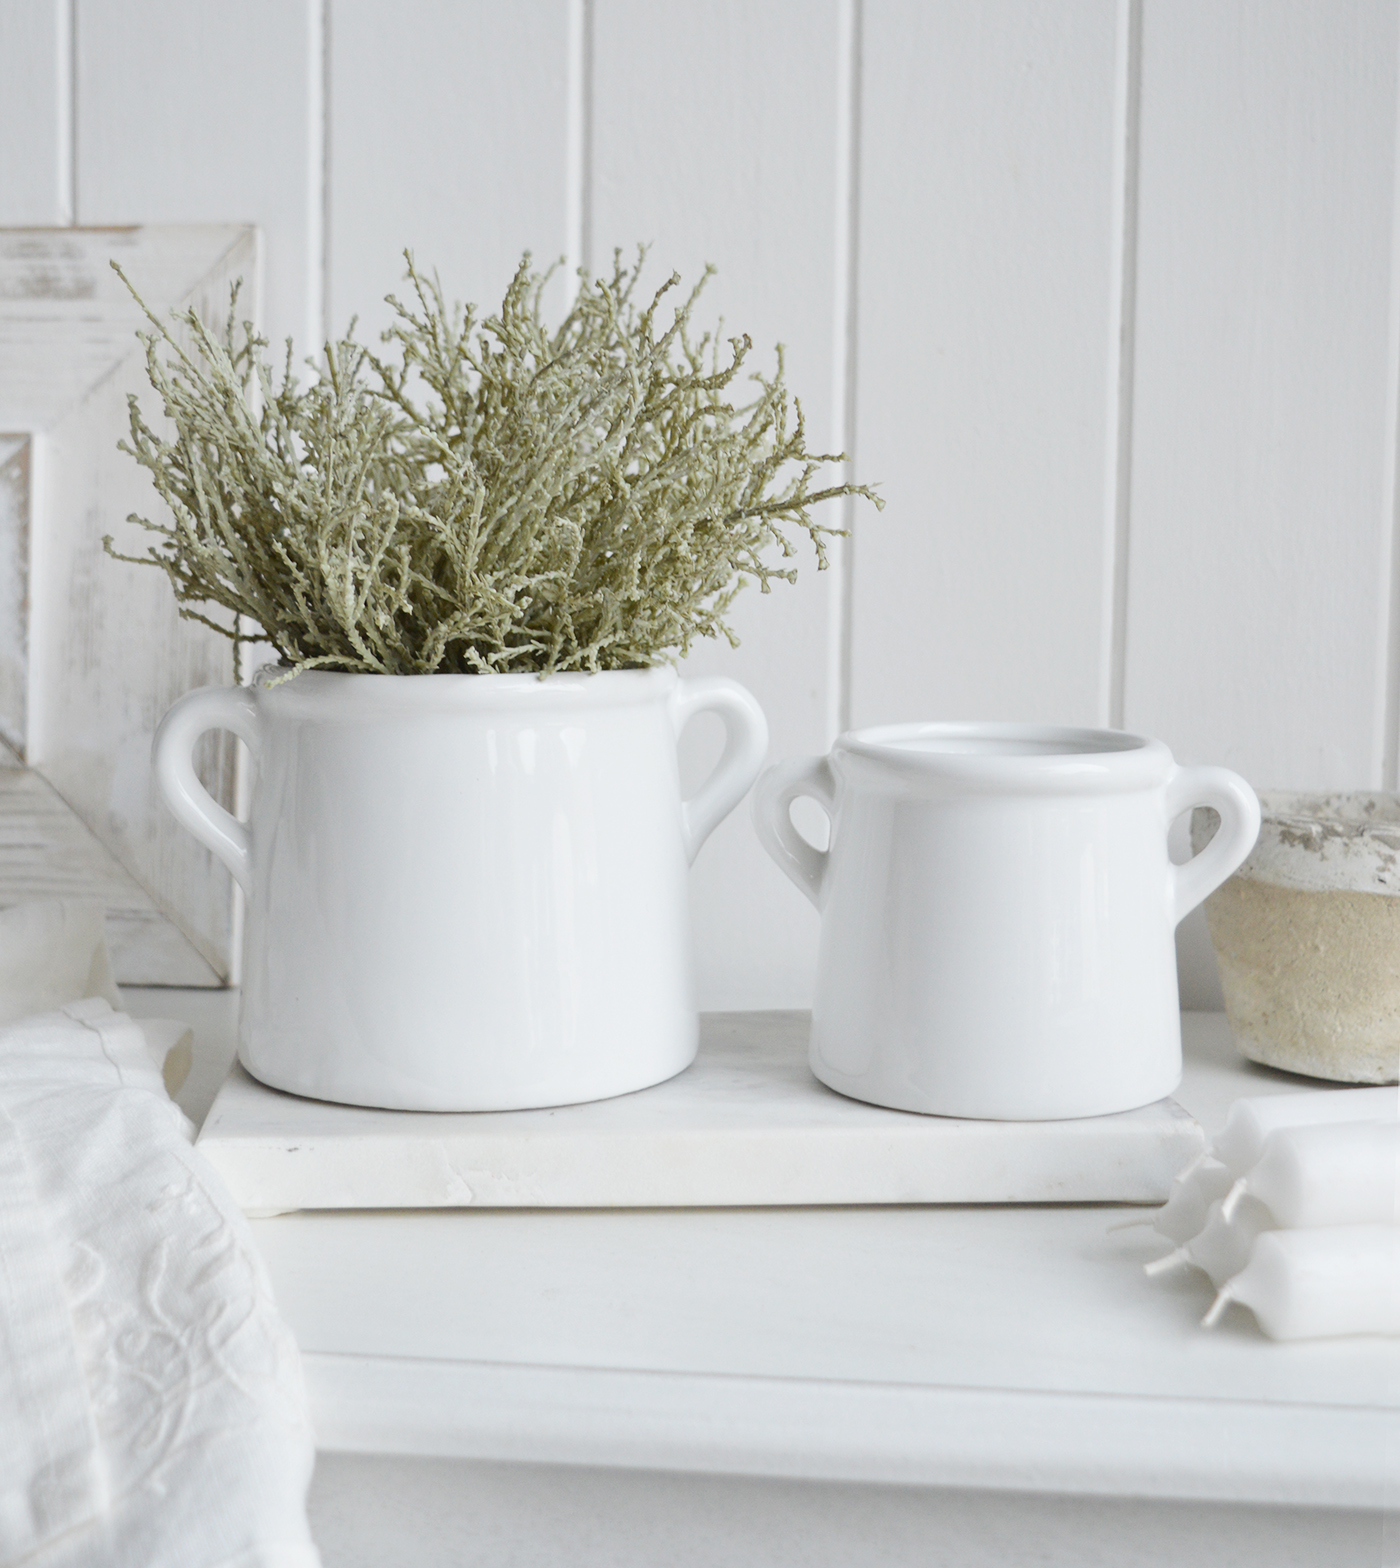 Faux silver cotton lavender in a white ceramic pot